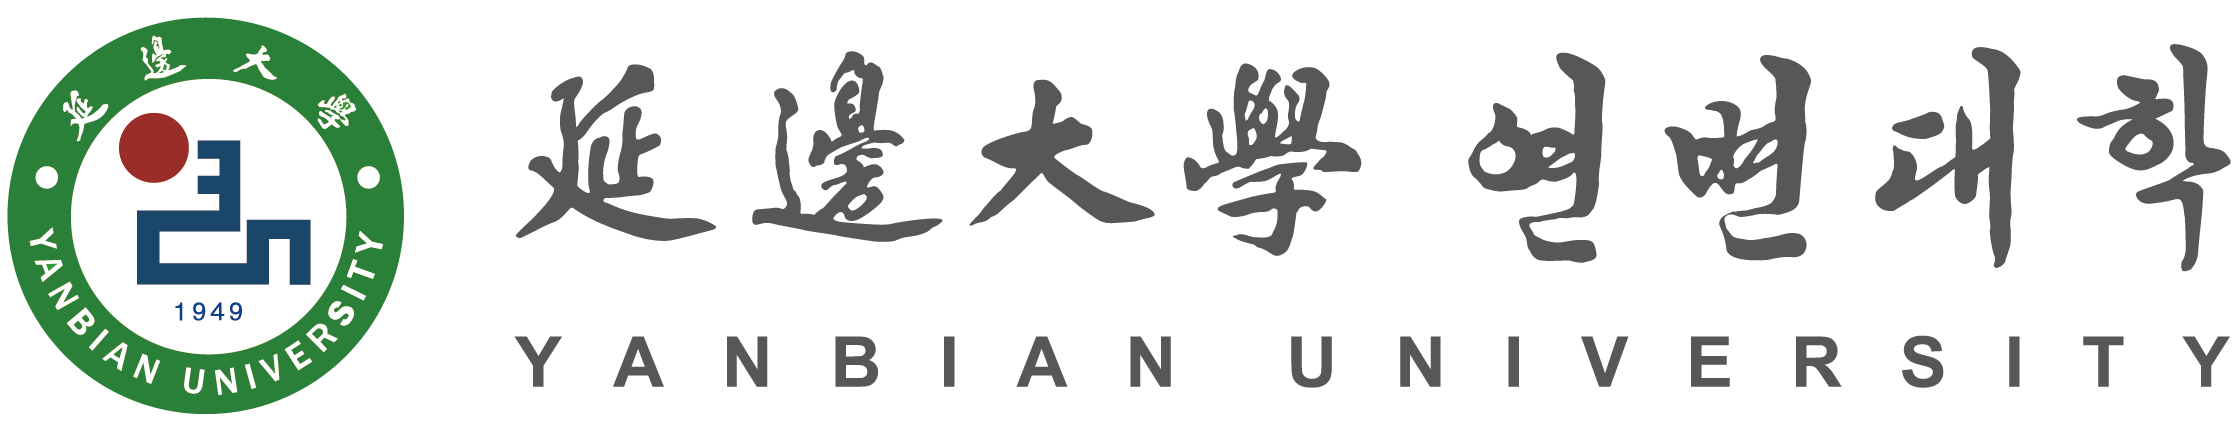 YBU Logo